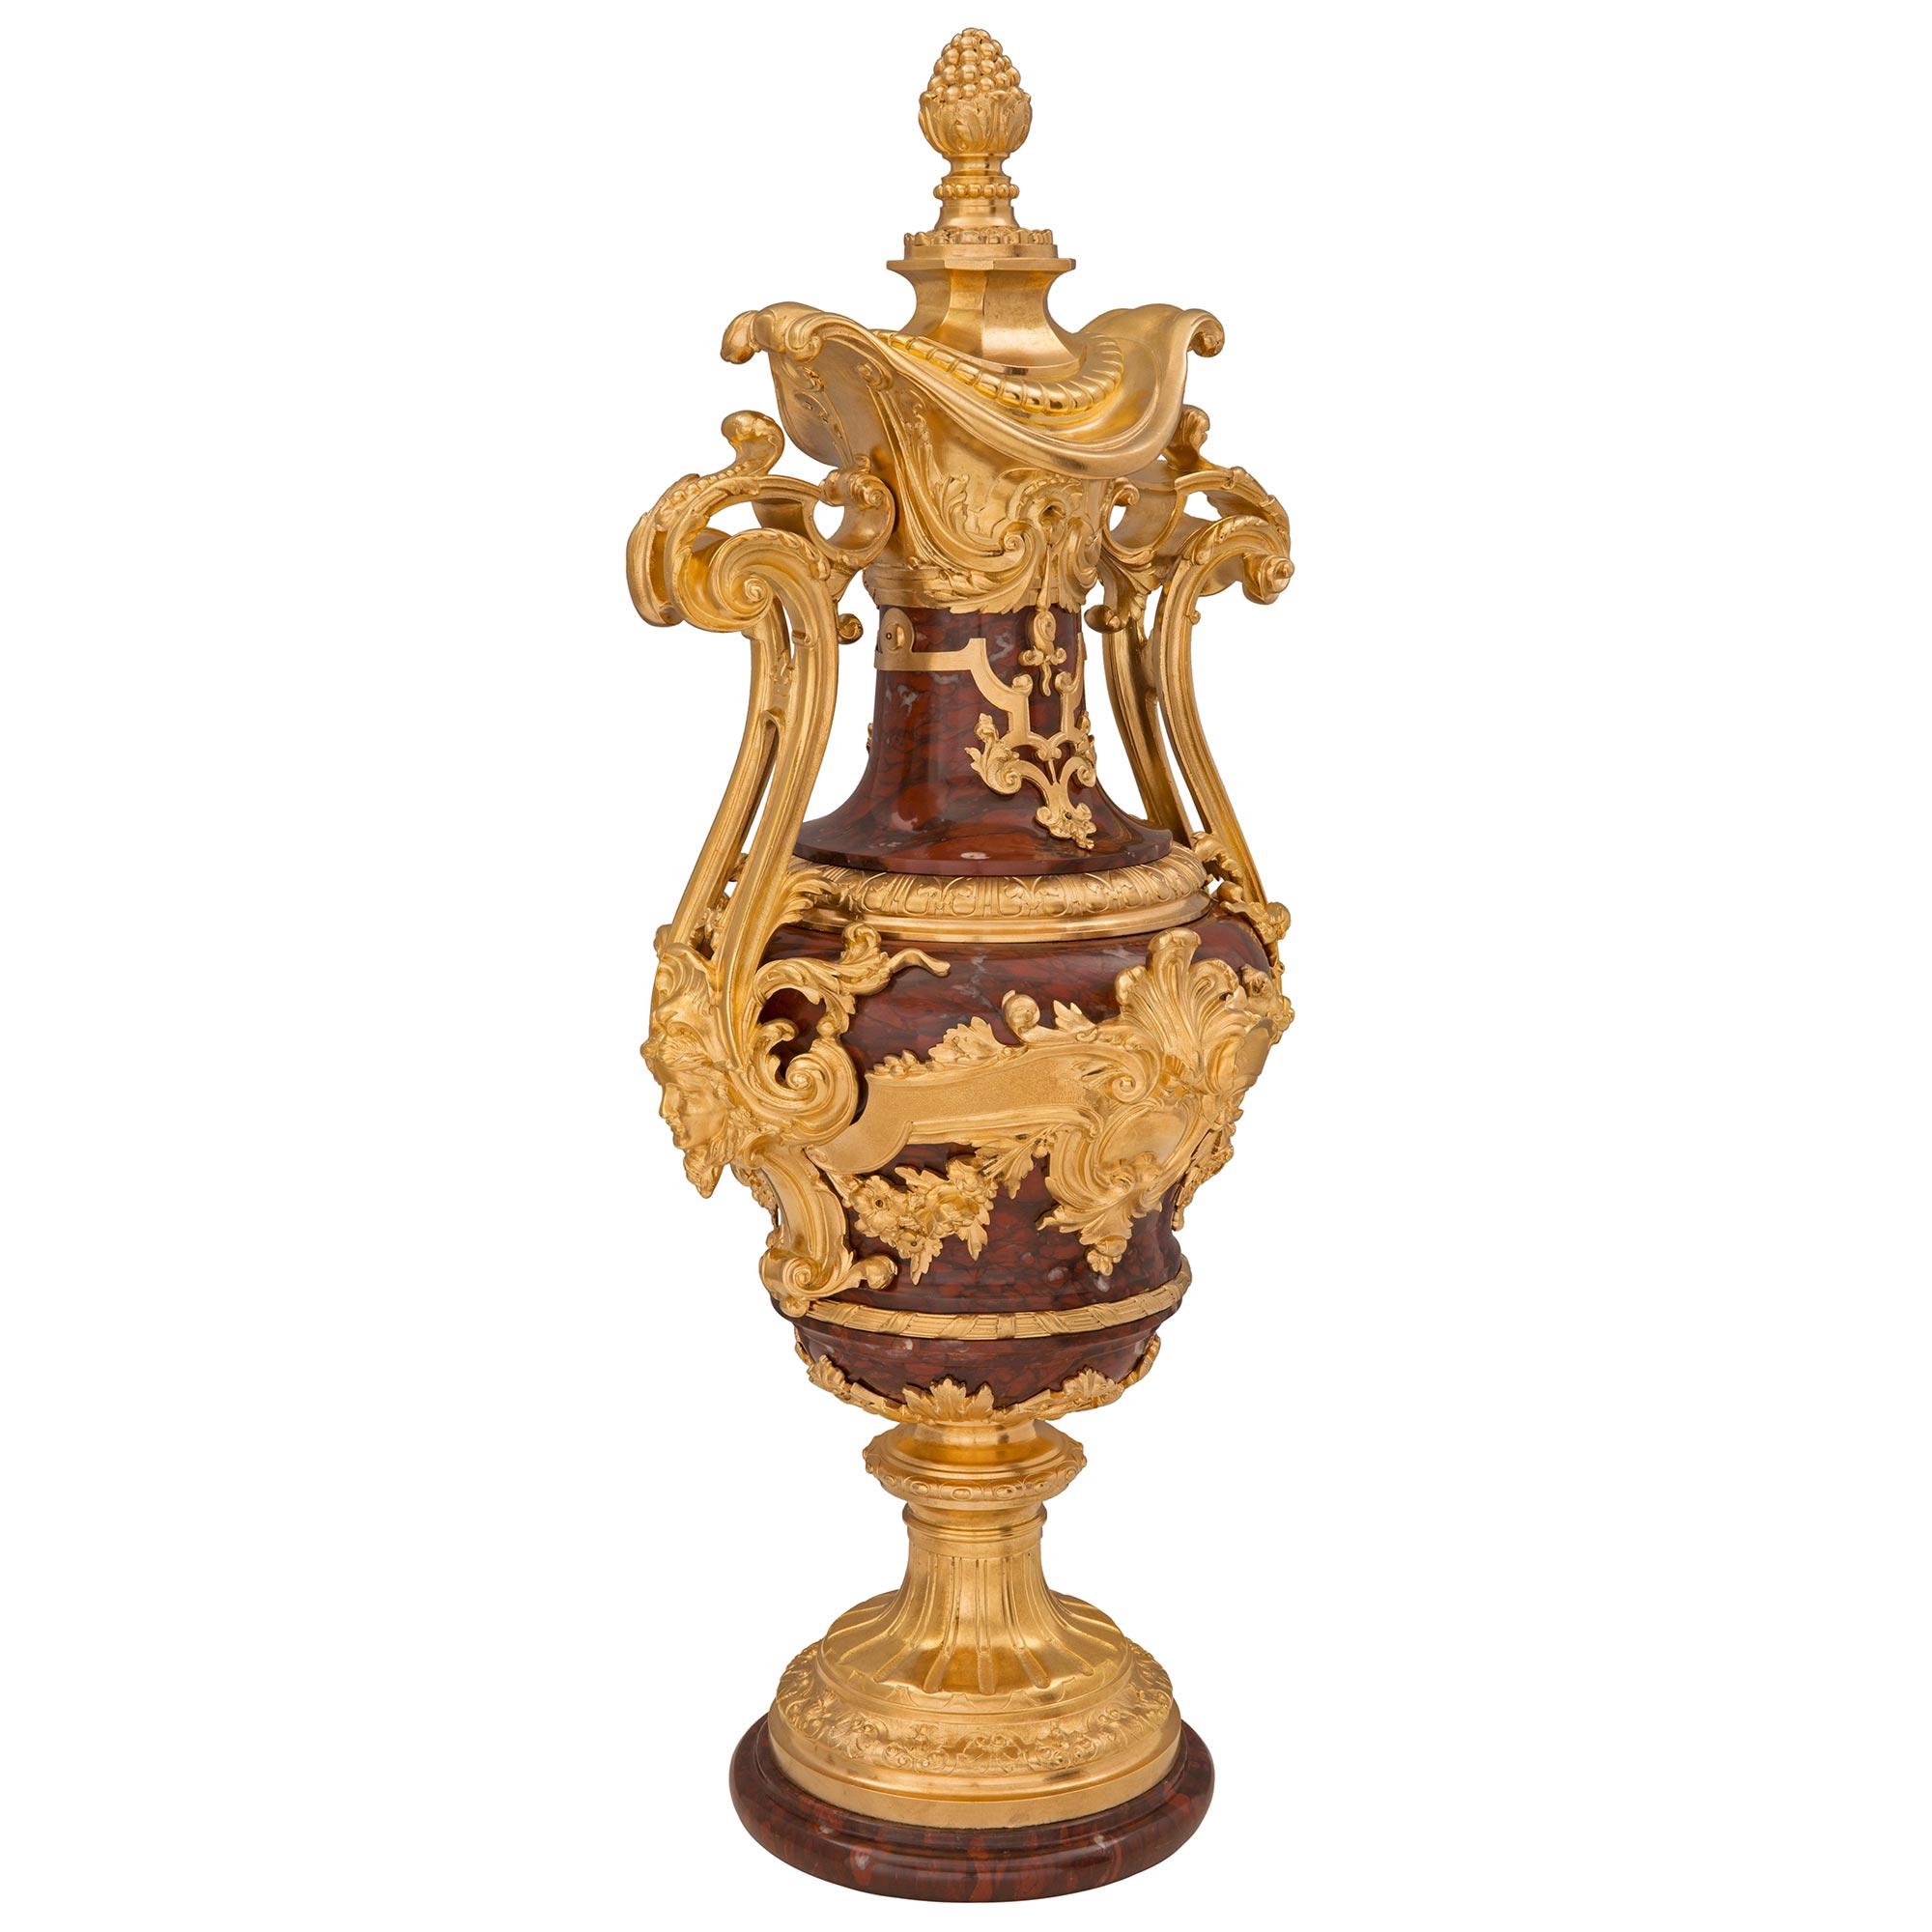 Ein atemberaubendes und äußerst hochwertiges Paar französischer Urnen aus der Belle Époque des 19. Jahrhunderts aus Rouge Griotte-Marmor und Ormolu, signiert Ferdinand Barbedienne. Jede dieser eindrucksvollen Urnen steht auf einem runden Sockel aus